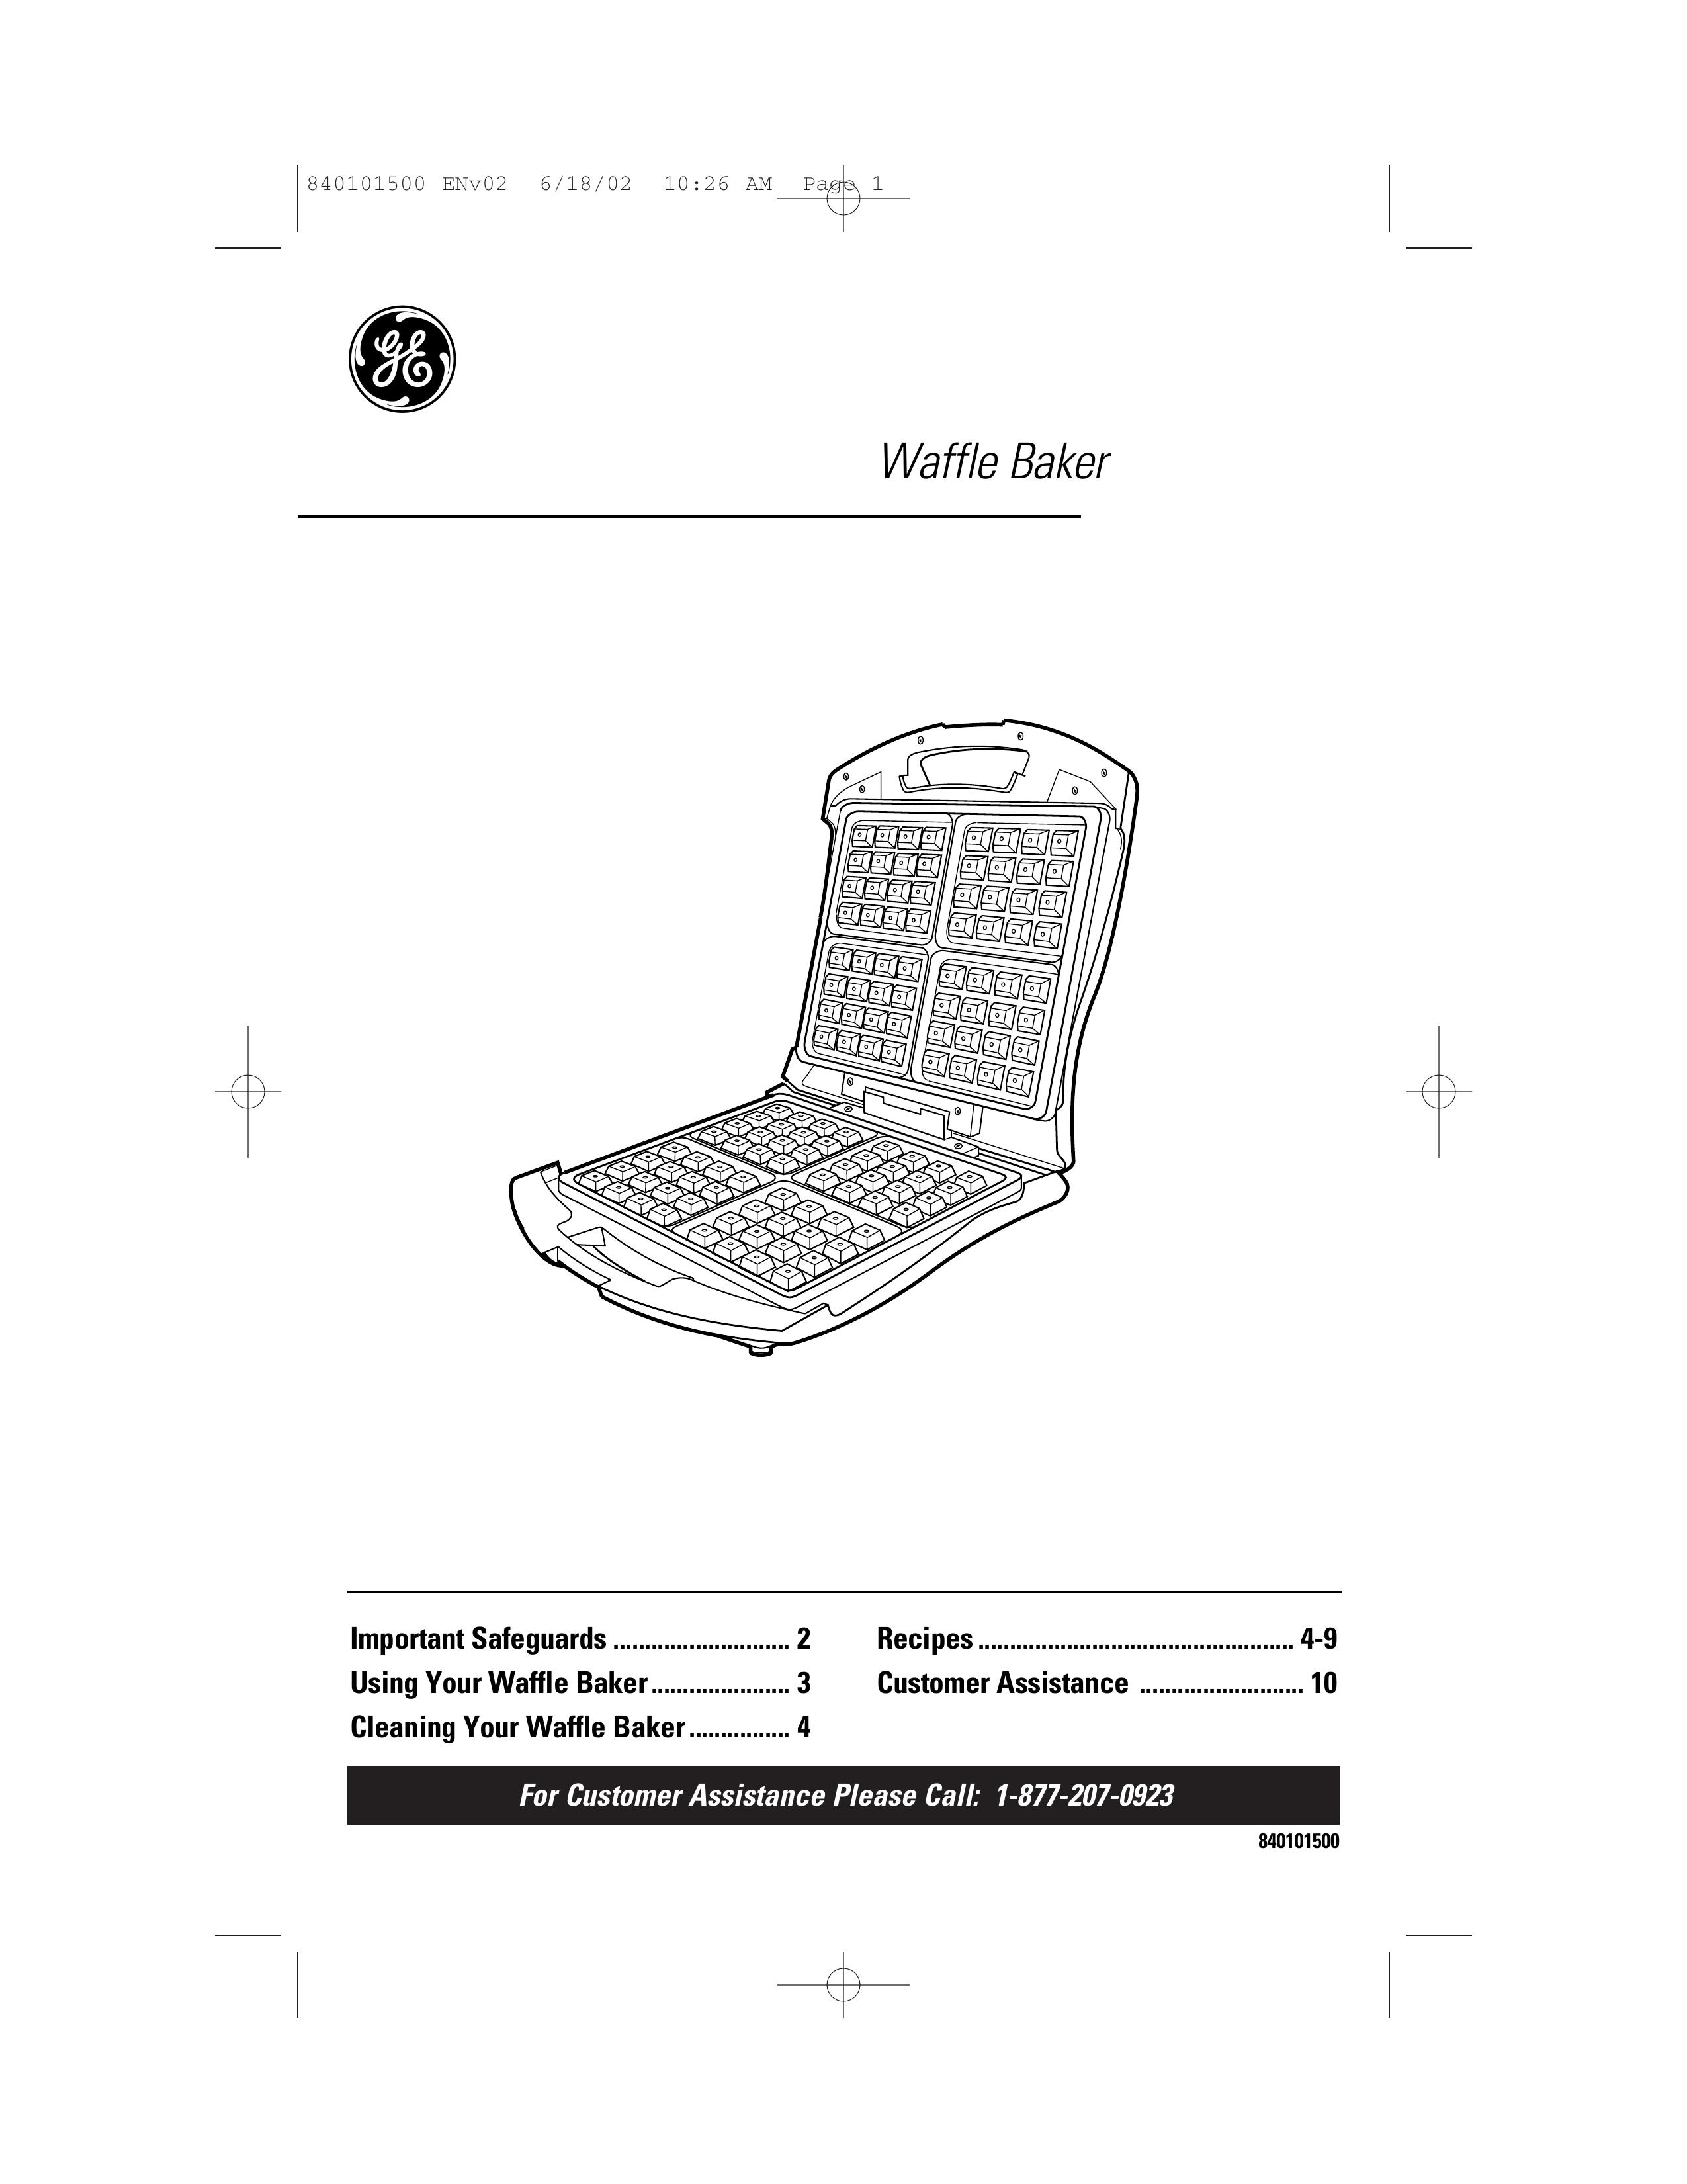 GE 840101500 Waffle Iron User Manual